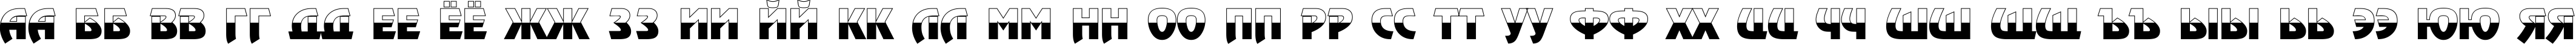 Пример написания русского алфавита шрифтом a_RewinderTitulBW Bold